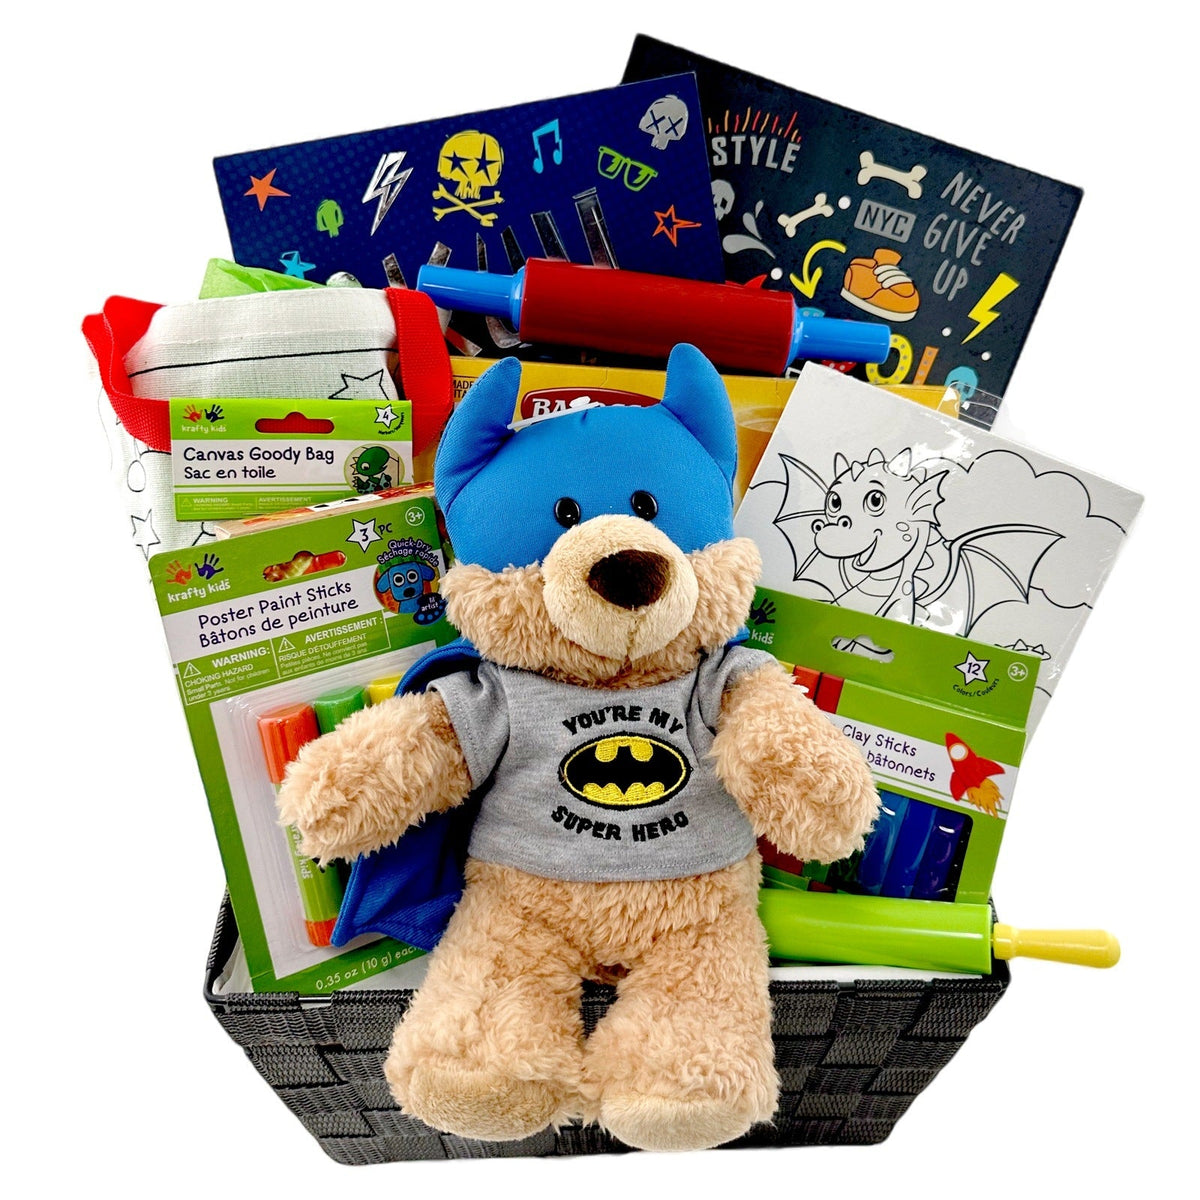 Super Hero Fun Time Gift Basket for Kids